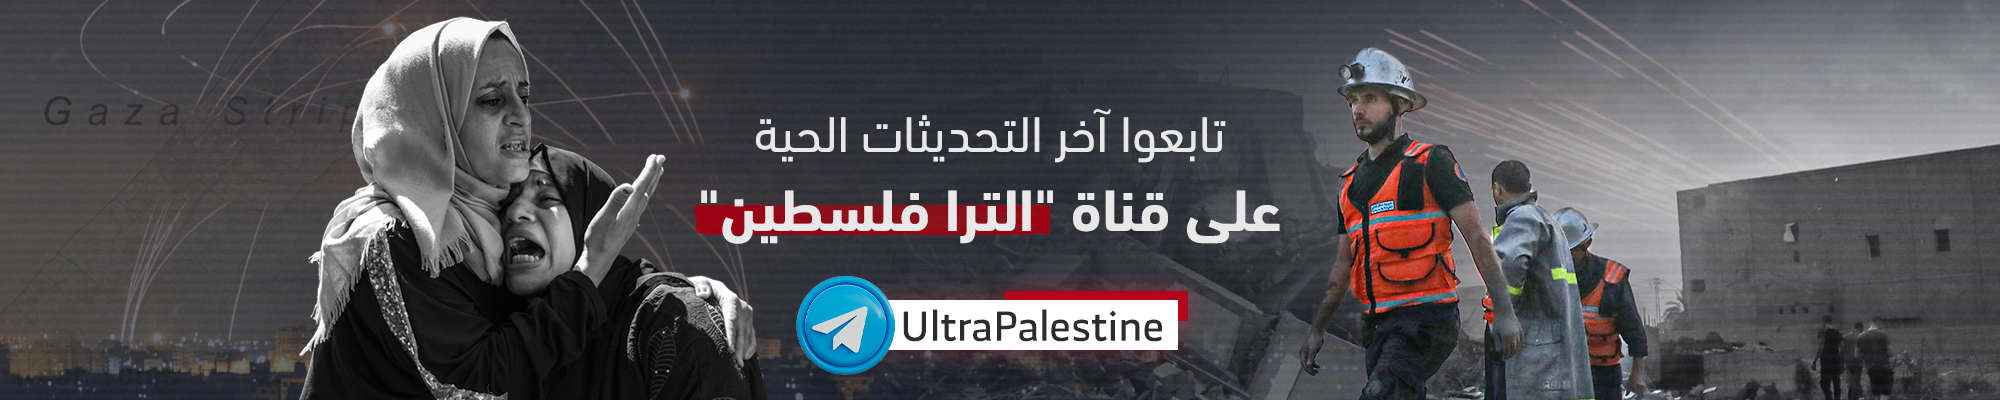 الترا فلسطين تلغرام